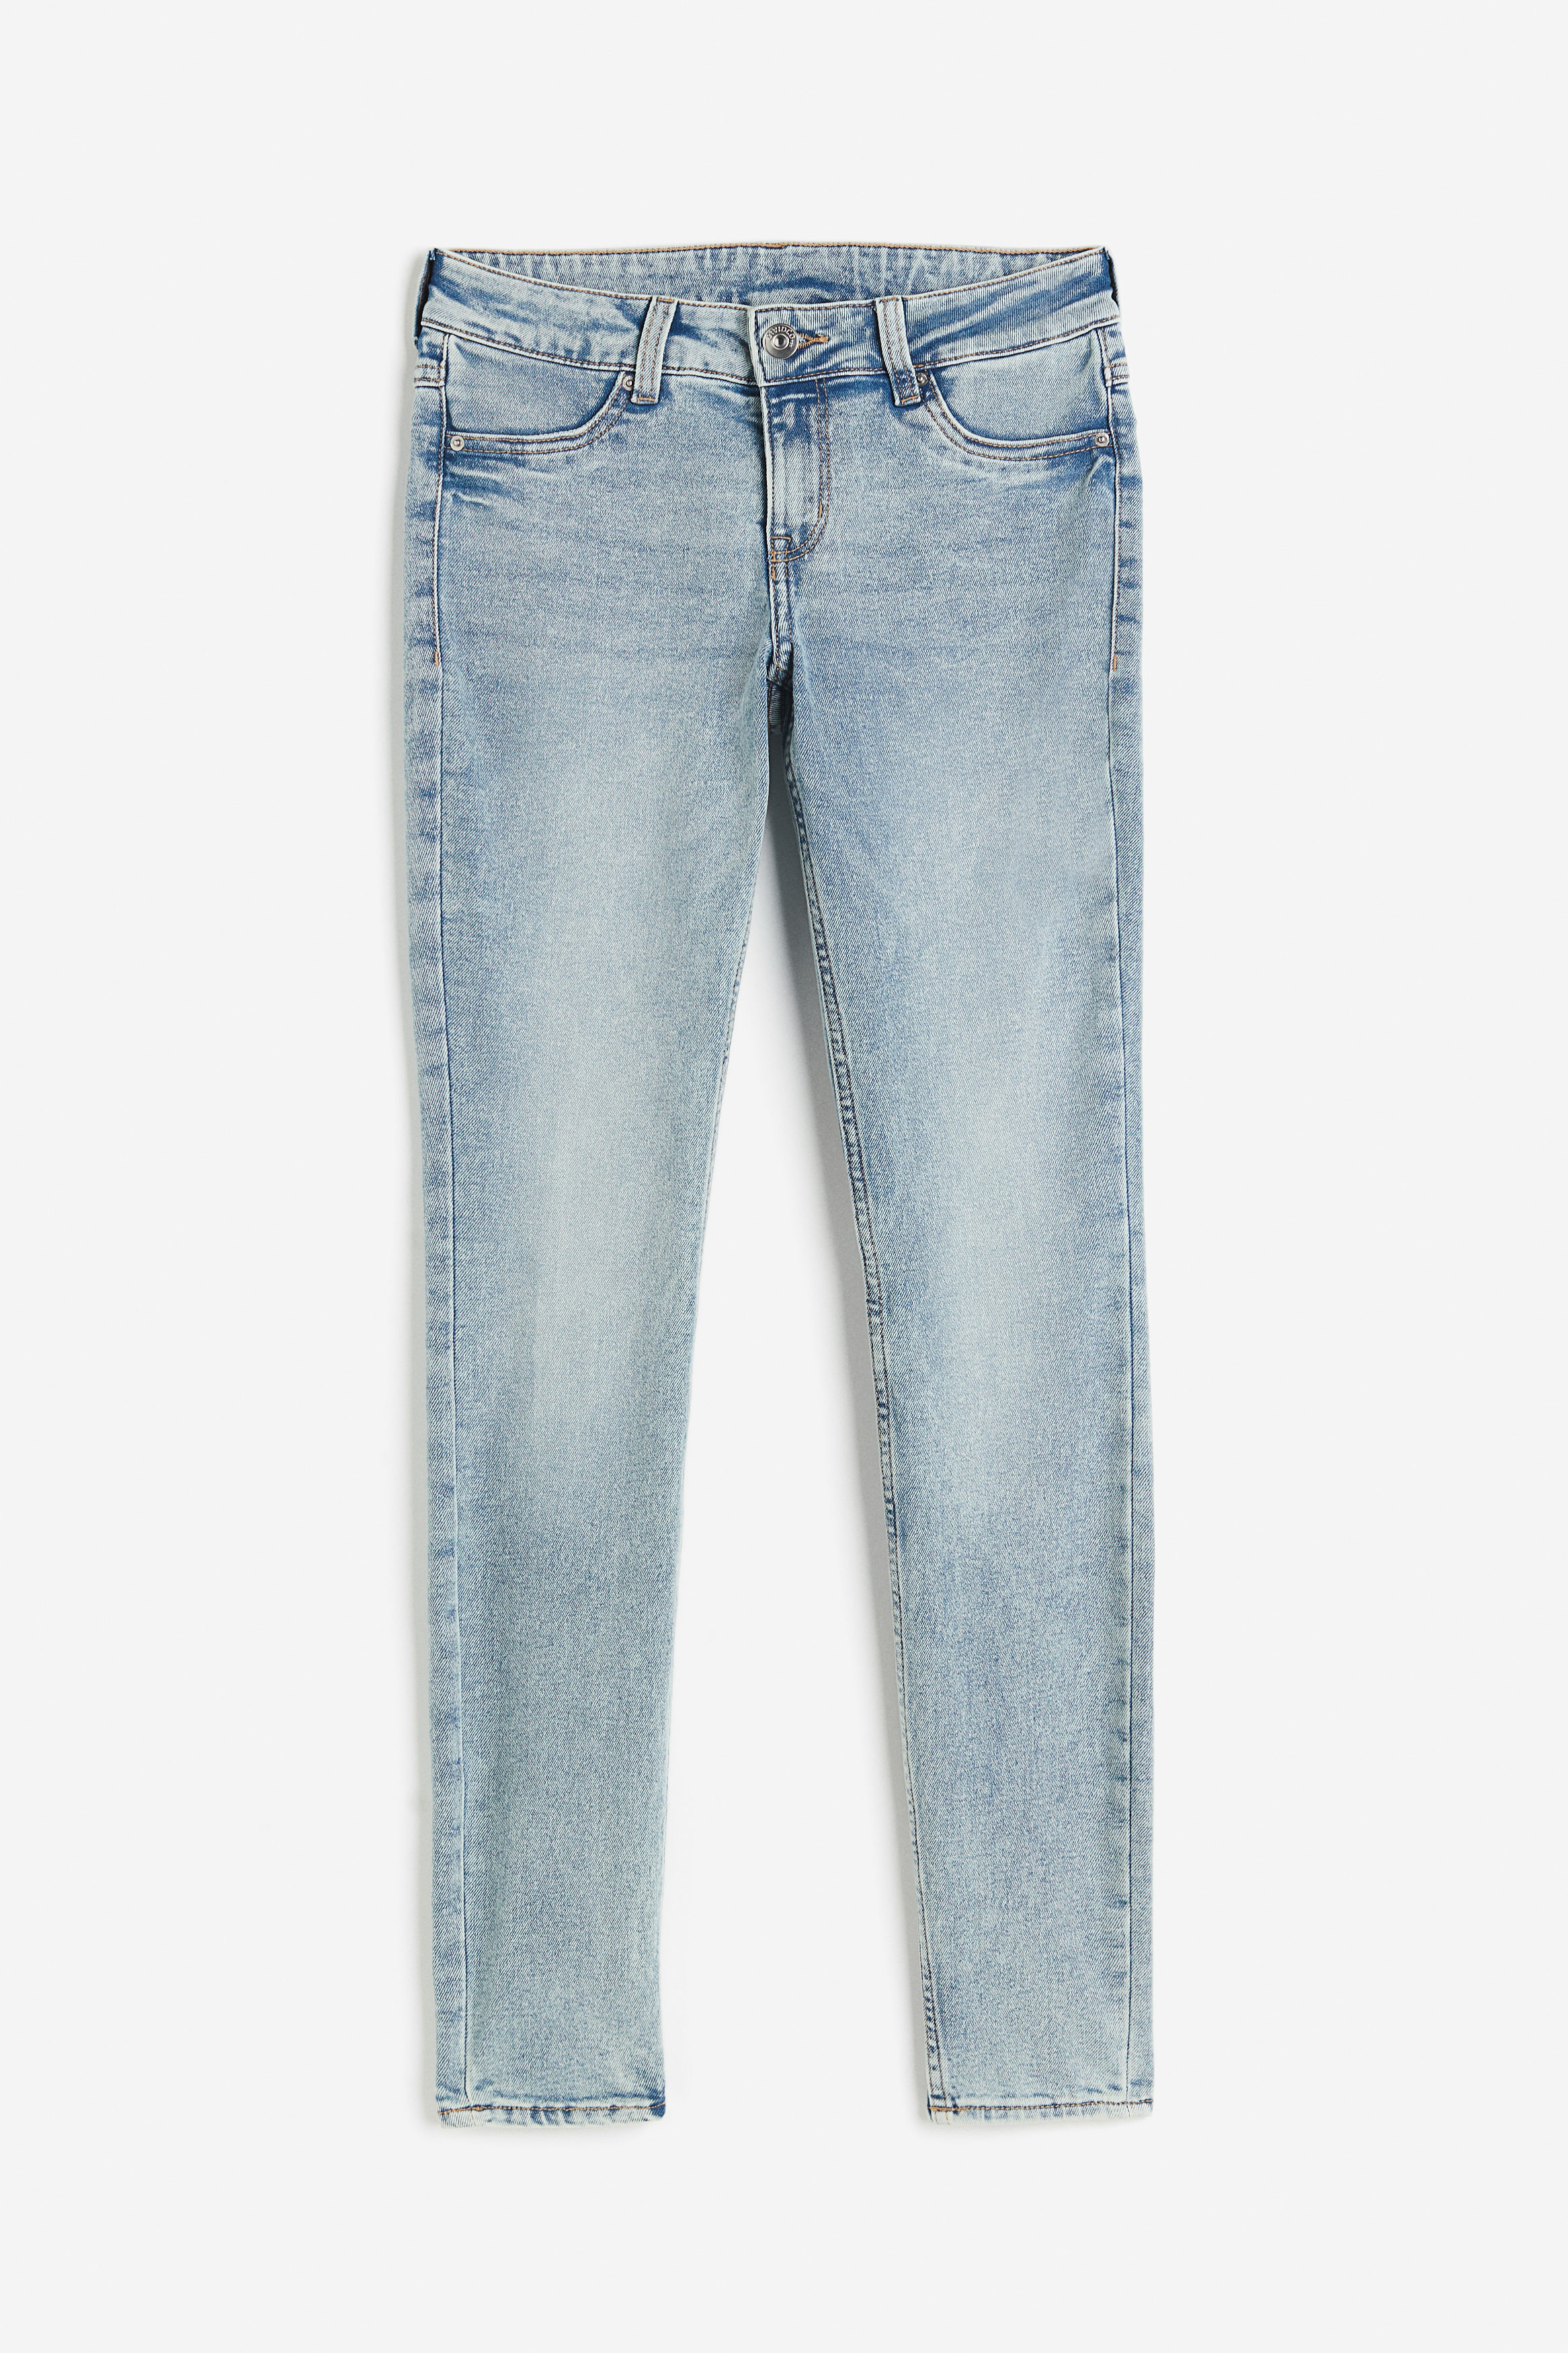 Billede af H&M Skinny Low Jeans Lys Denimblå, jeans. Farve: Light denim blue I størrelse 48